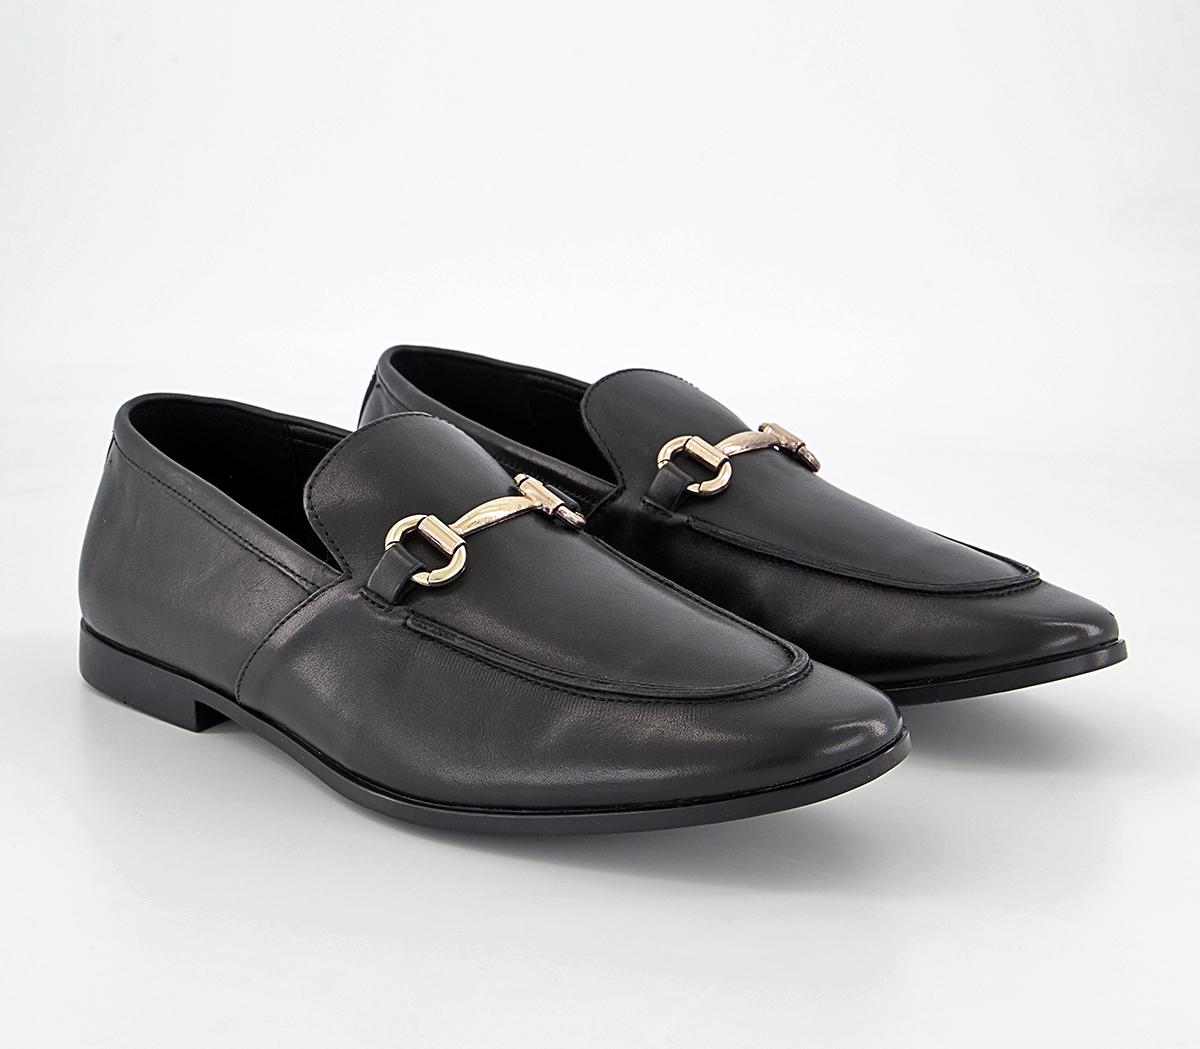 OFFICE Lemming 2 Shoes Black Leather - Men’s Smart Shoes